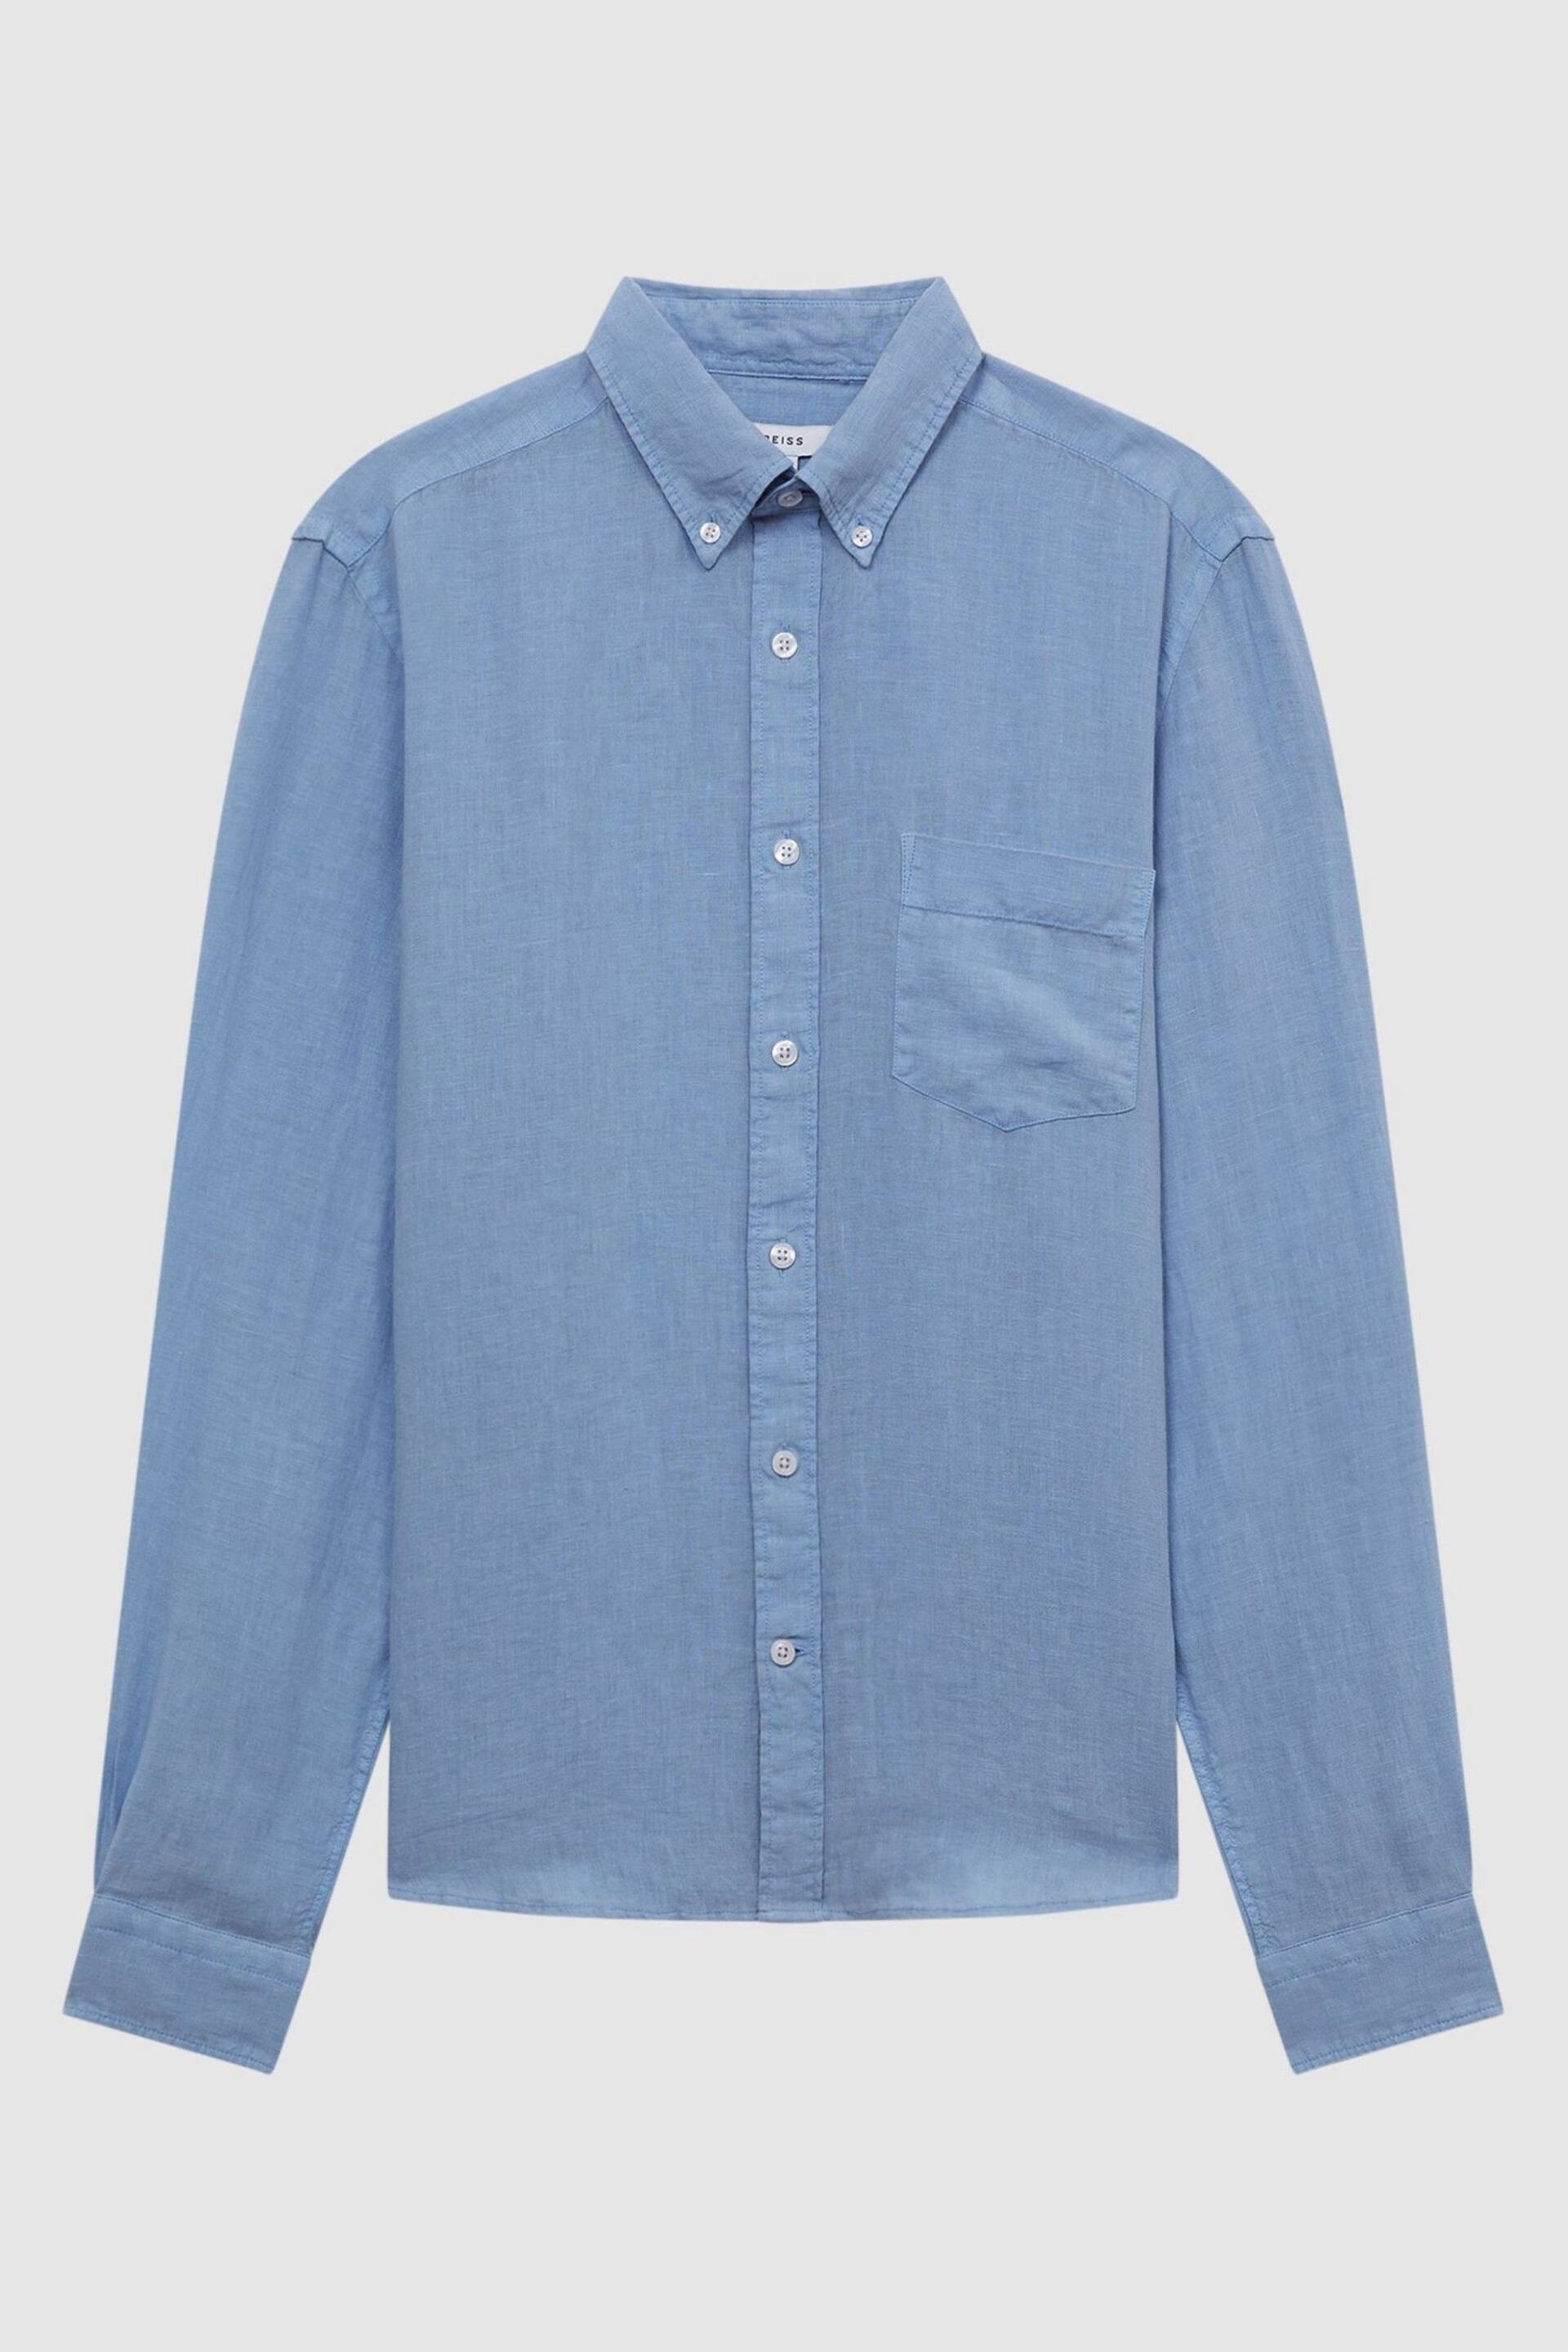 Reiss Powder Blue Queens Regular Fit Button Down Linen Shirt - Image 2 of 5